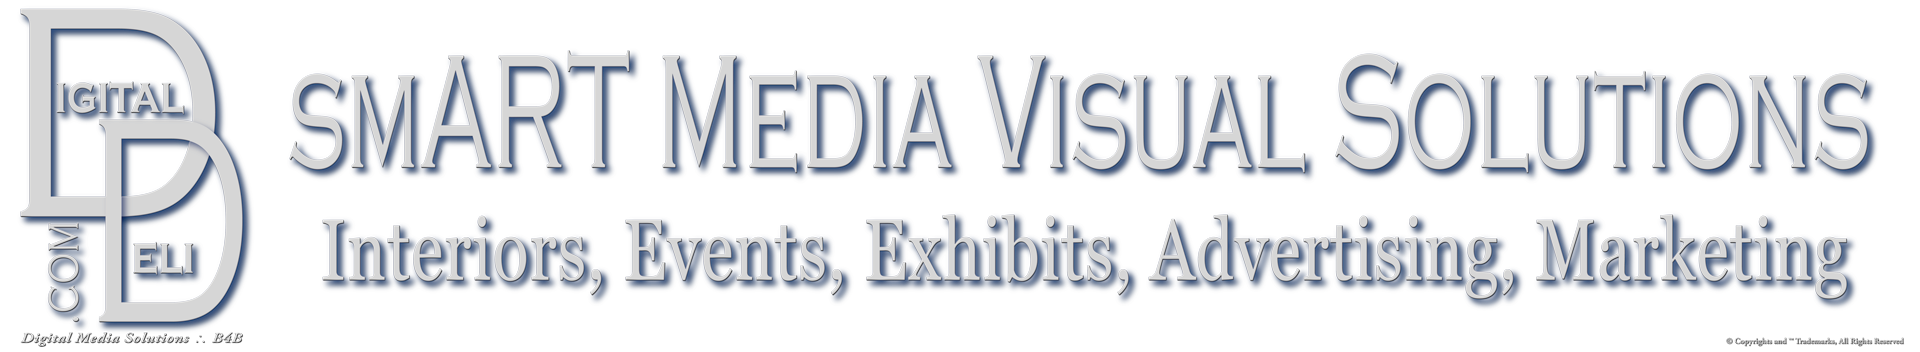 smART Media Visual Solutions™